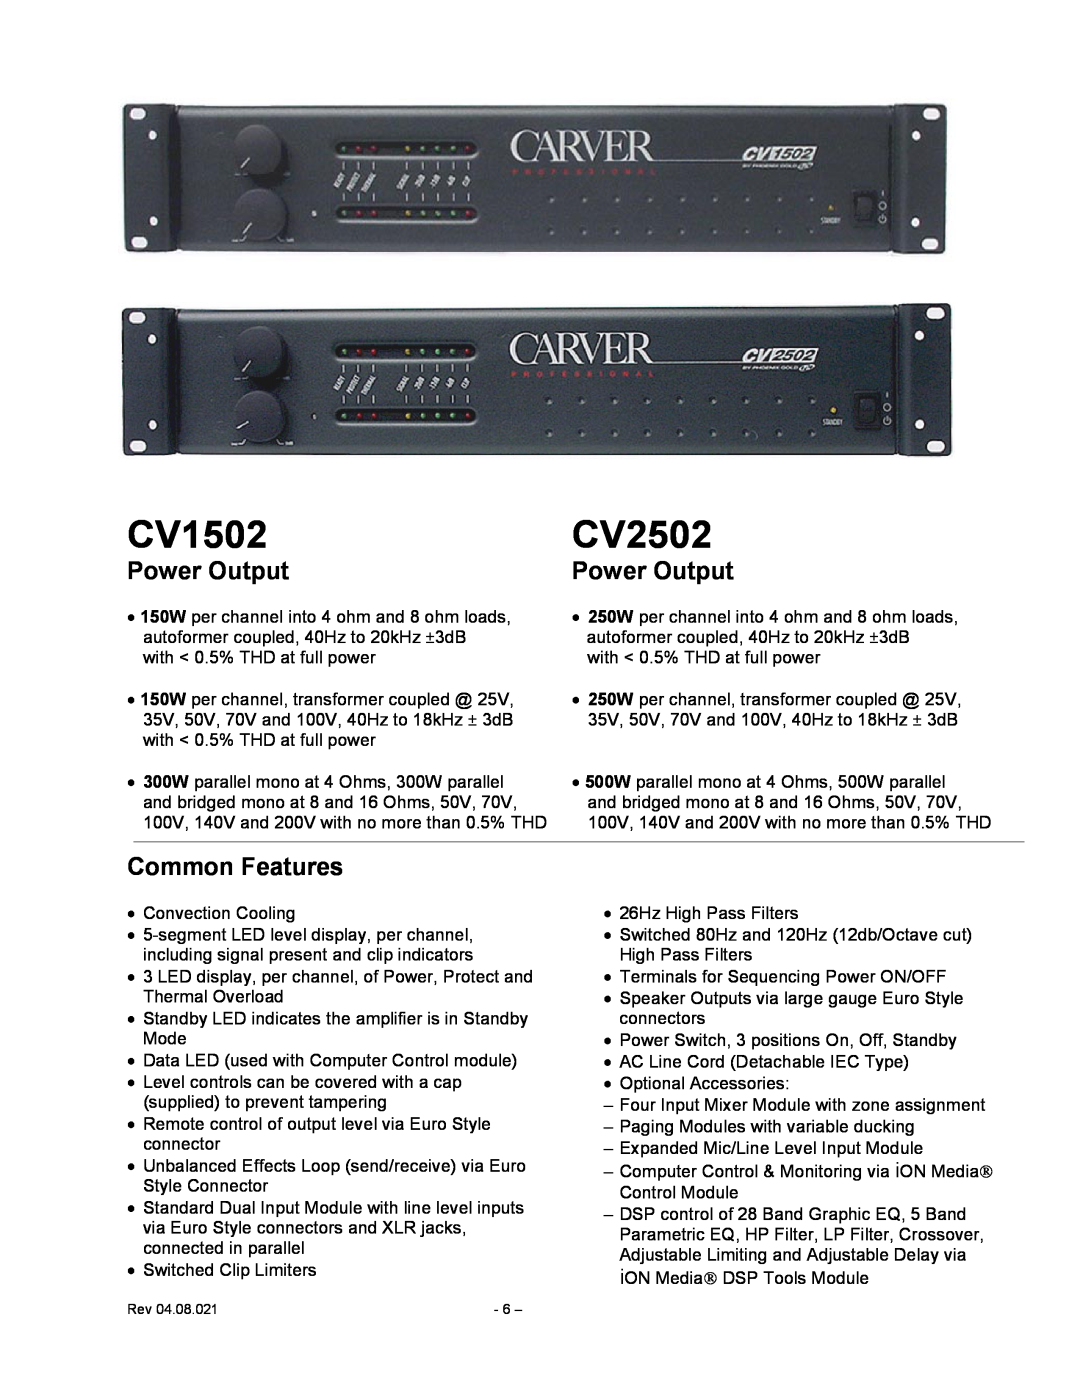 Carver CV Series user manual CV1502, CV2502, Power Output, Common Features 